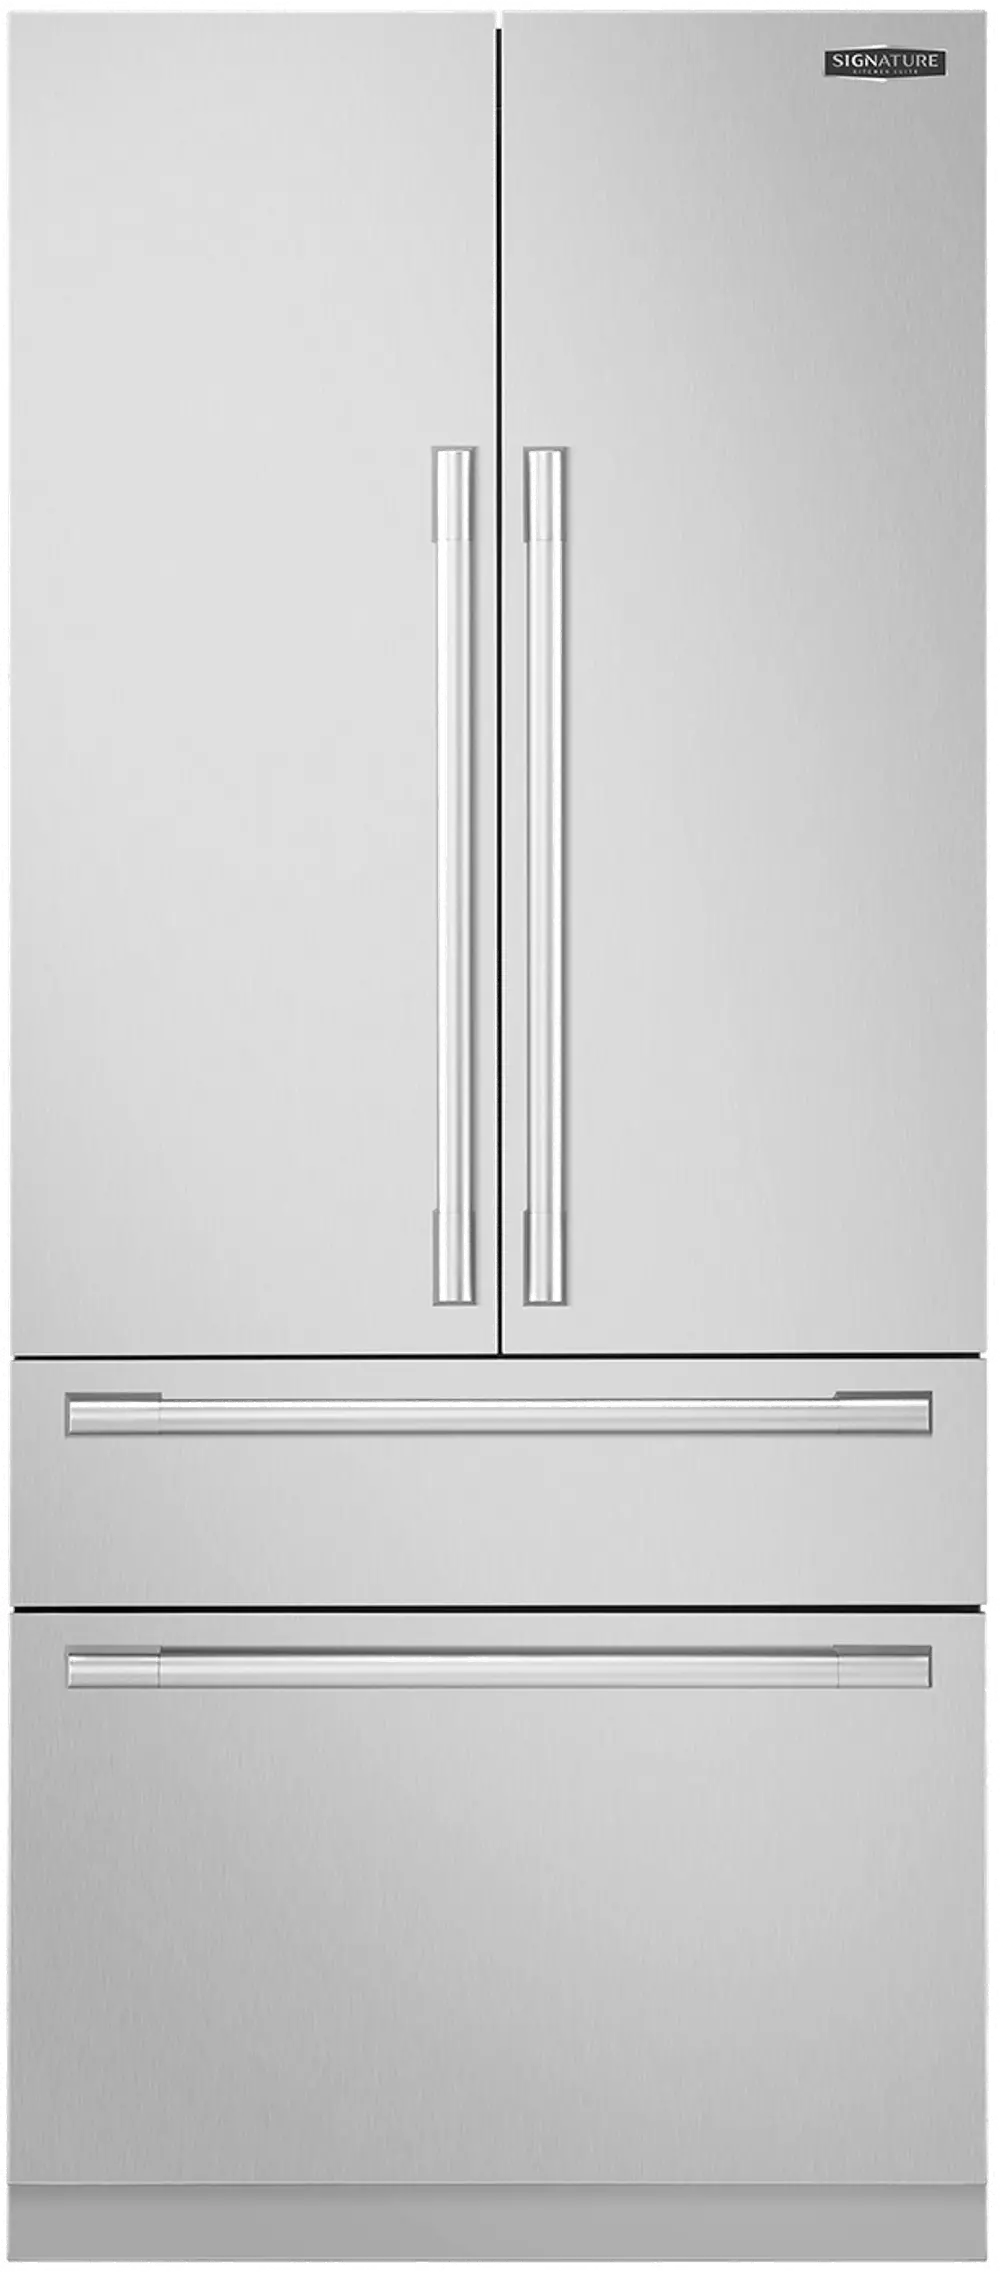 SKSFD3604P Signature 19.3 cu ft 4 Door French Door Refrigerator - Panel Ready-1